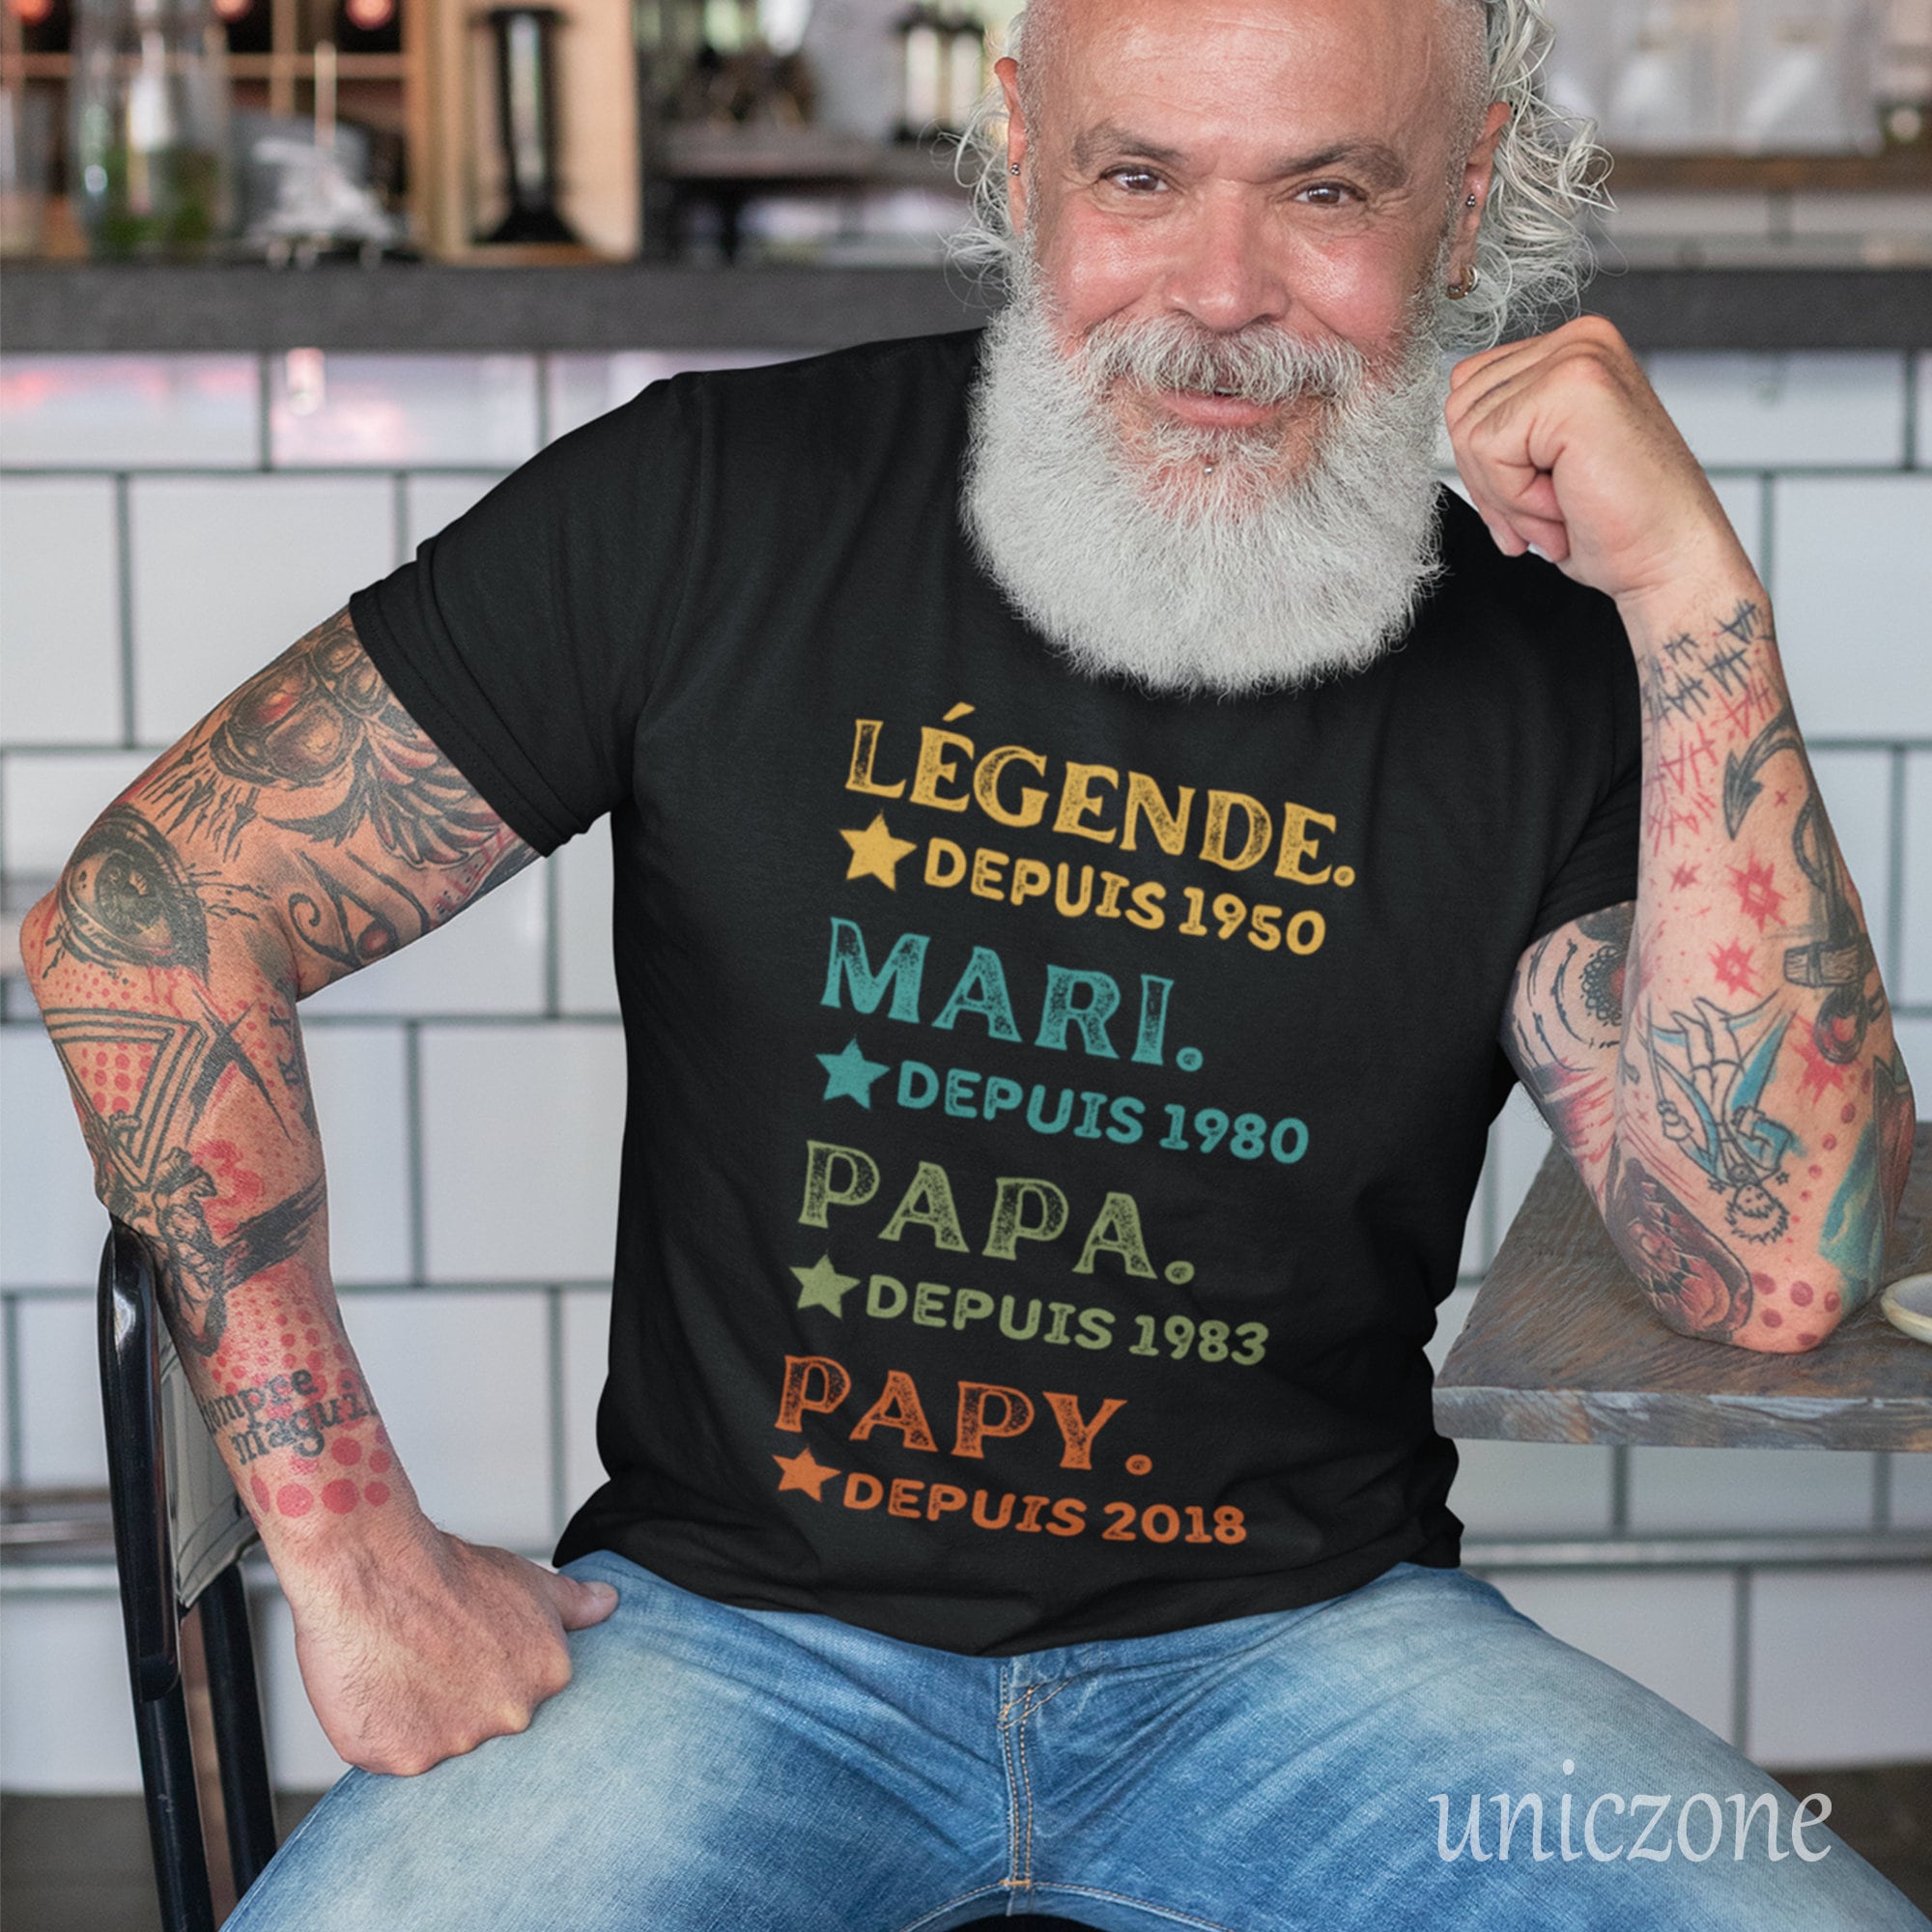 Cette Mamie Géniale T-shirt Personnalisé, Annonce De Grossesse